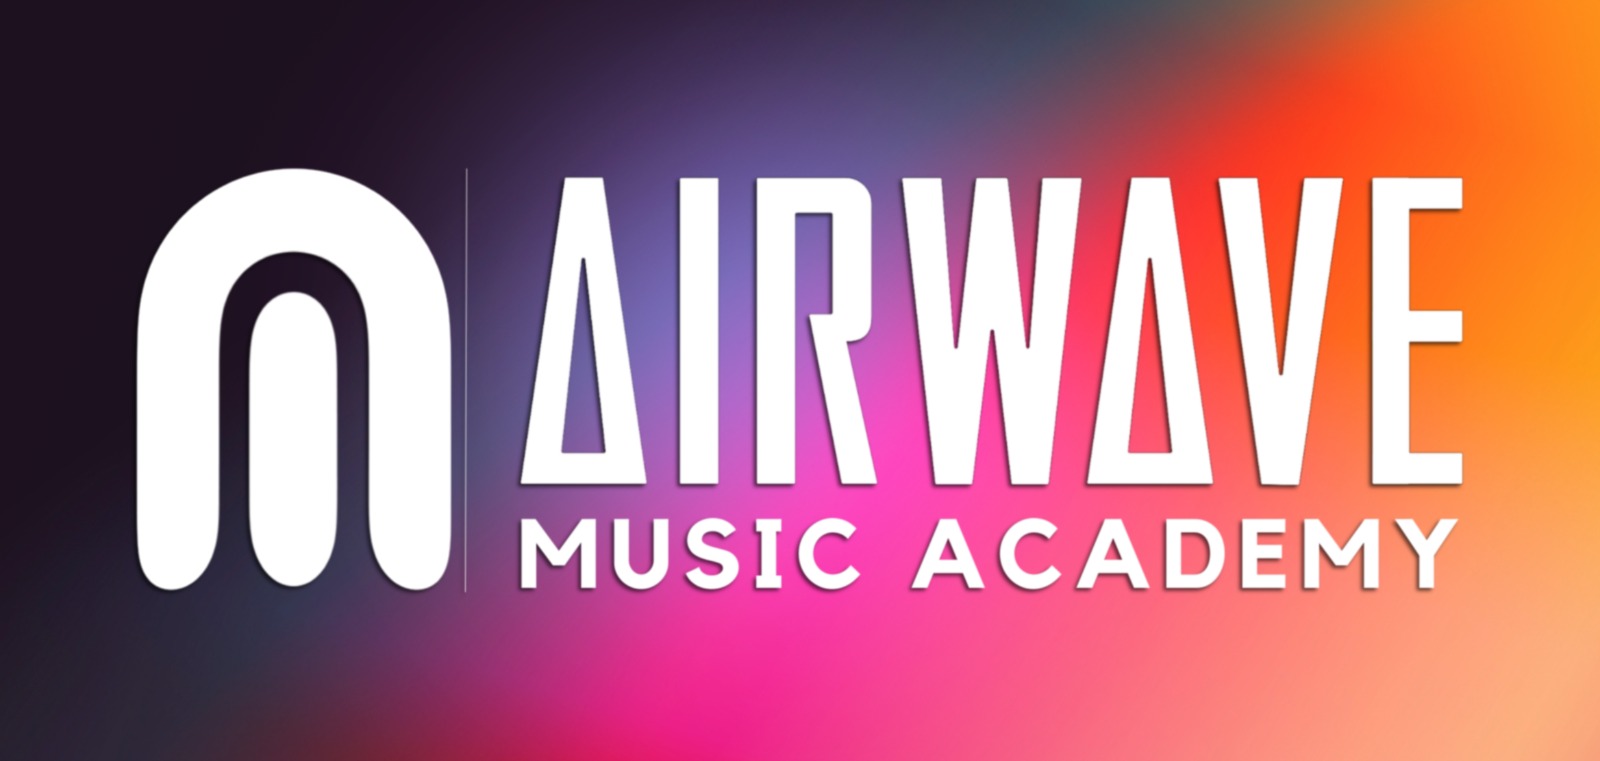 Première itération d'une série de cours dans le cadre de la Airwave Music Academy